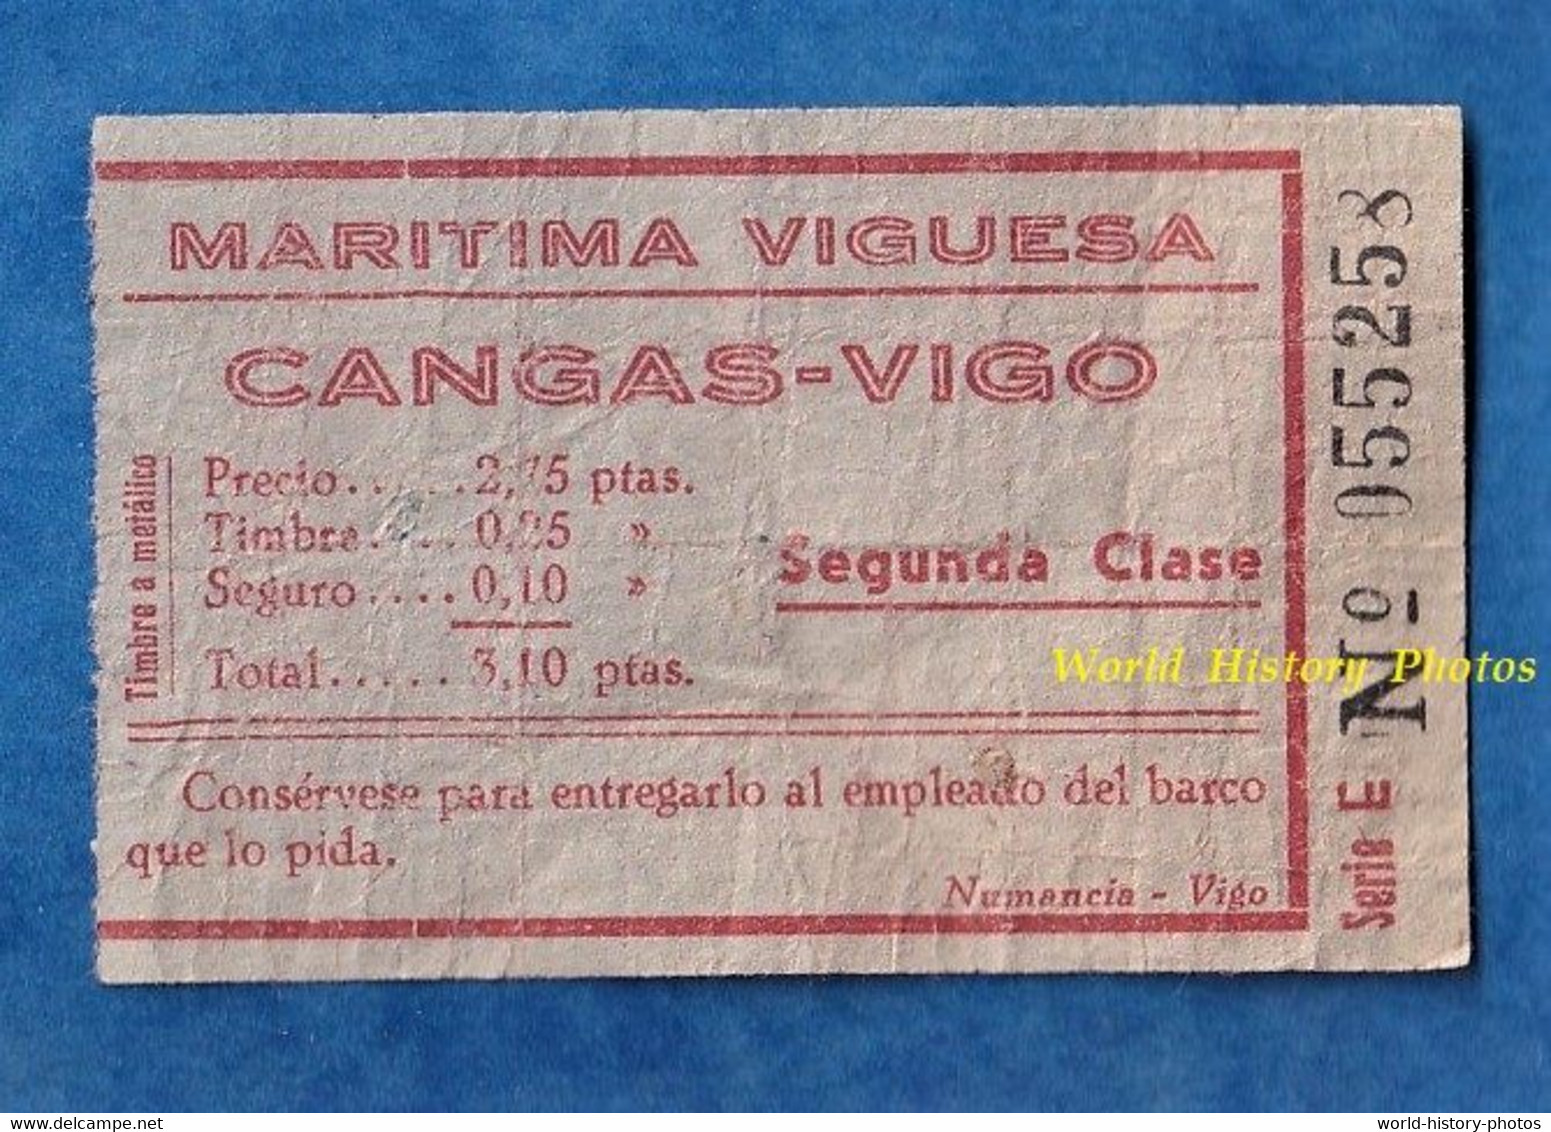 Ticket Ancien De Bateau ? - MARITIMA VIGUESA - Puerto CANGAS - VIGO - Segunda Clase - Série E 55258 - Europe